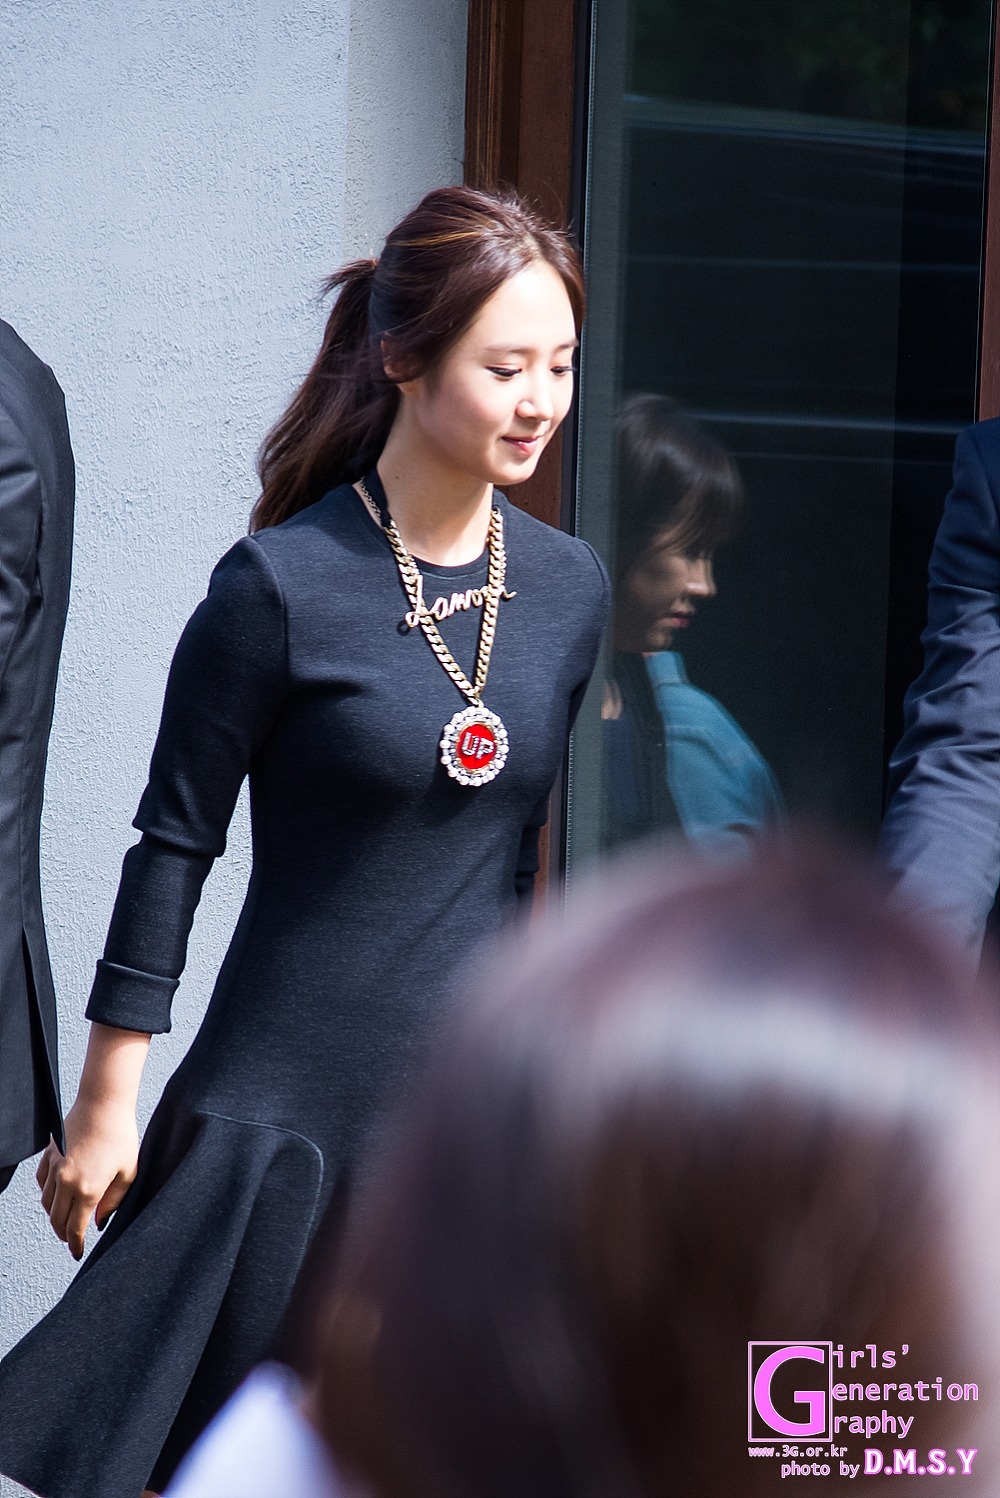 [PIC][30-09-2013]Yuri xuất hiện tại buổi họp báo ra mắt bộ phim "No Breathing" vào trưa nay - Page 2 275CE04052496F04144001